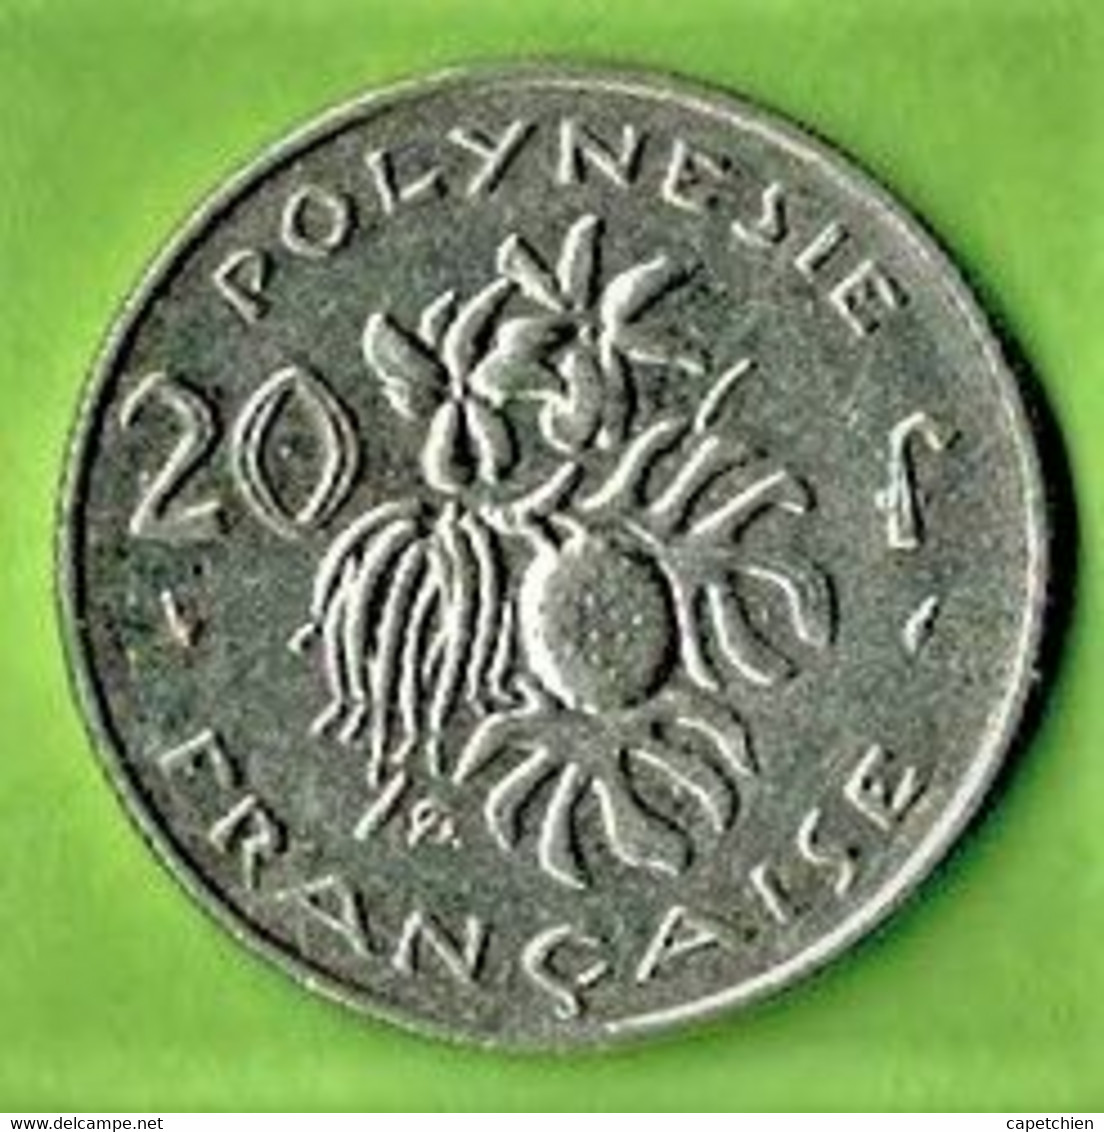 POLYNESIE FRANCAISE / 20 FRANCS / 1983 / - Comoros